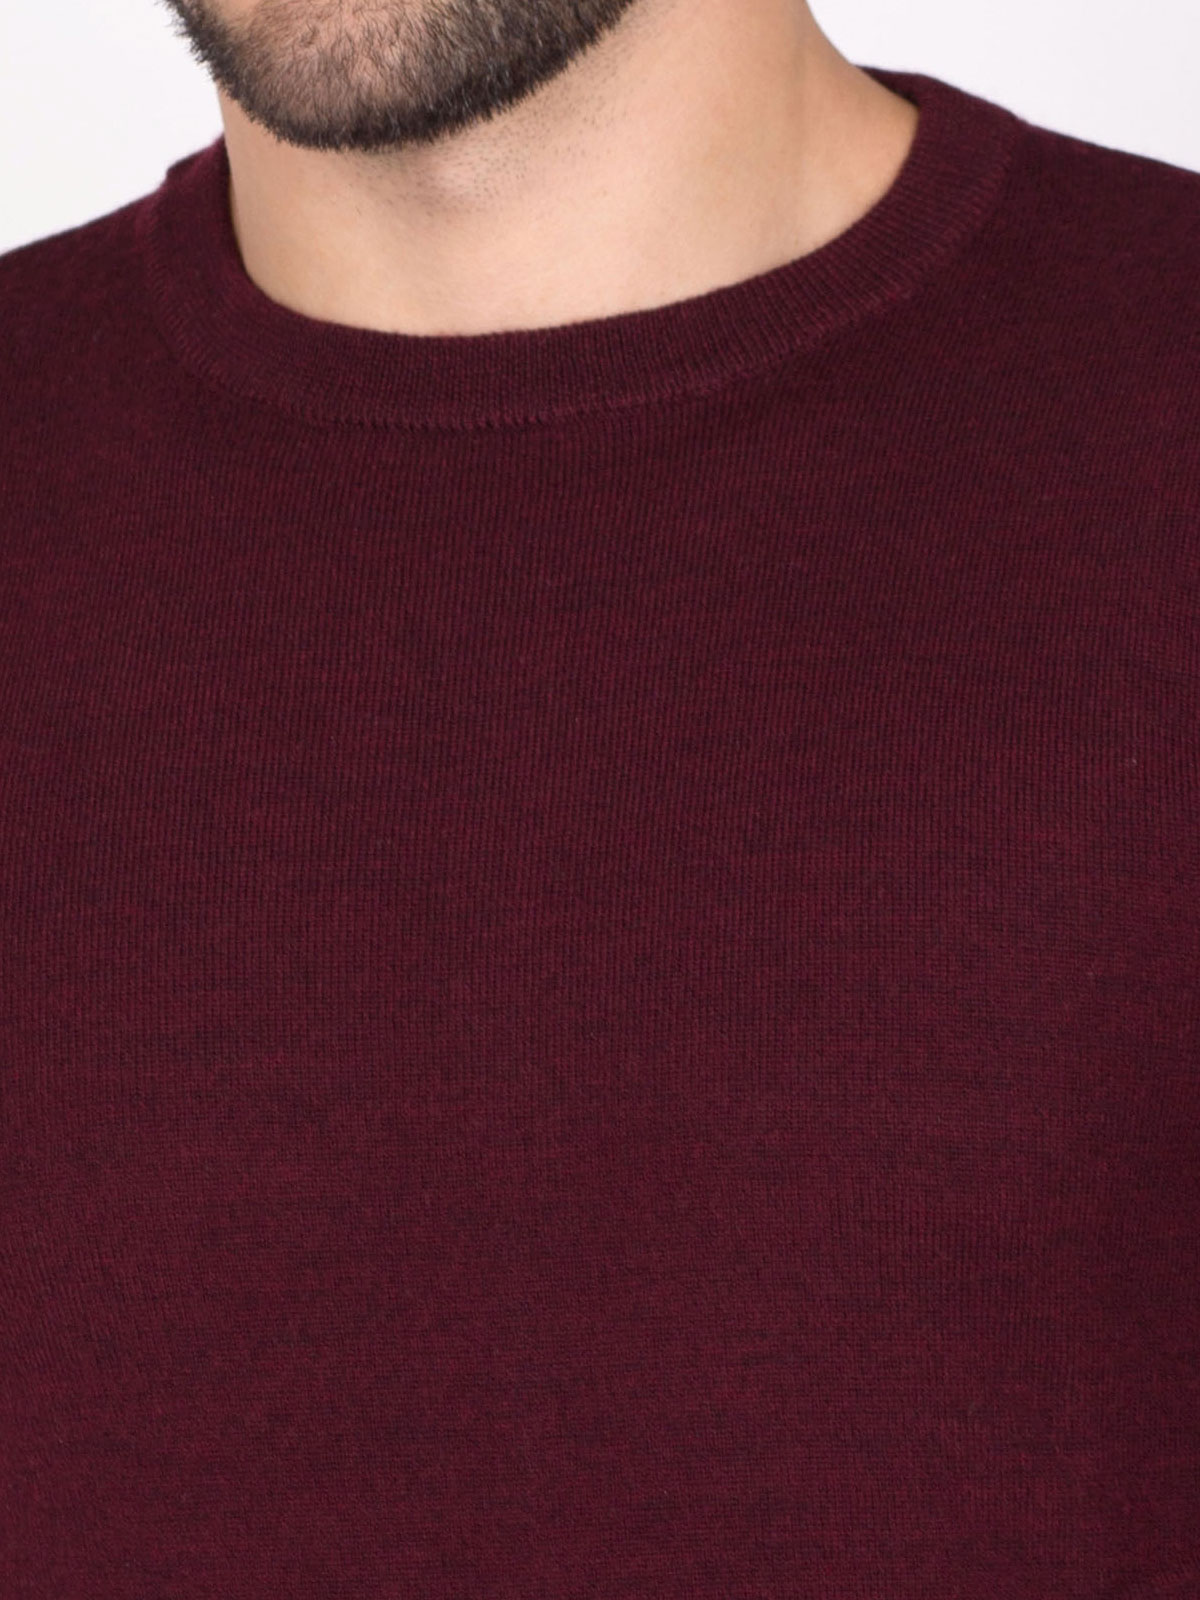 Merino wool burgundy sweater - 33088 € 34.87 img3